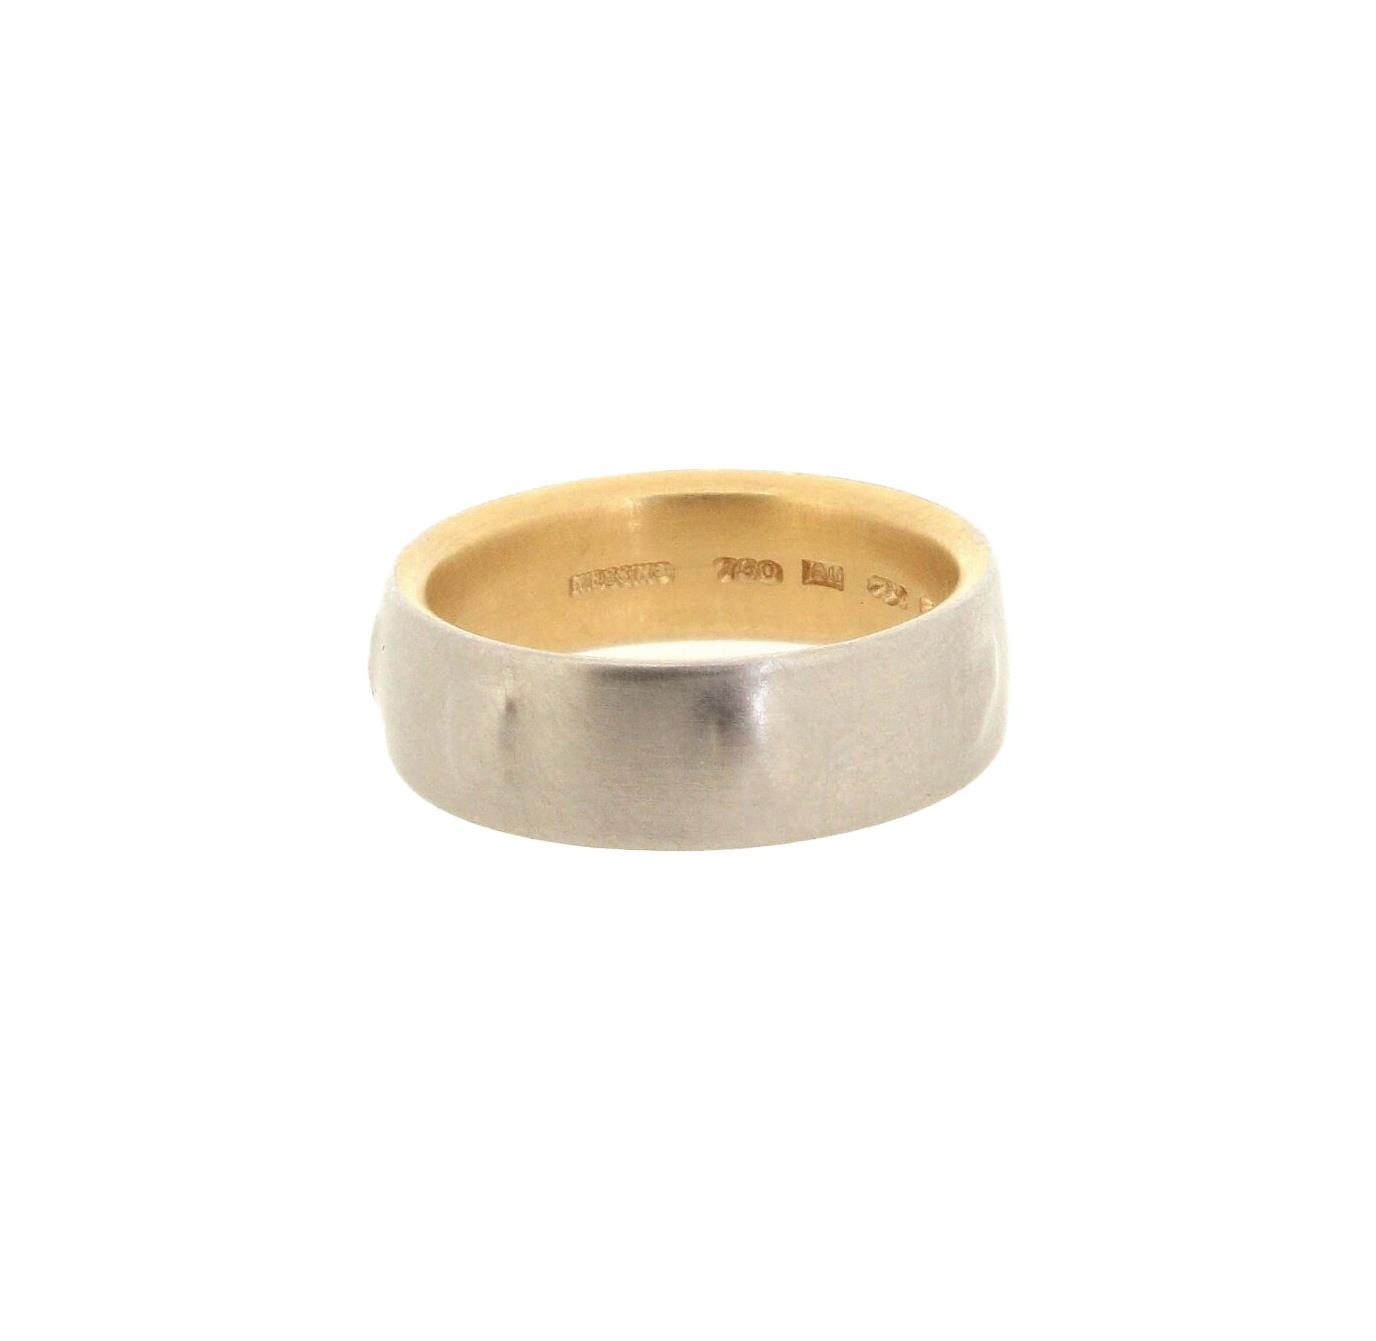 Ring Signum 950 Platin 18ct Gold - Niessing - N151025-6,5-Pt